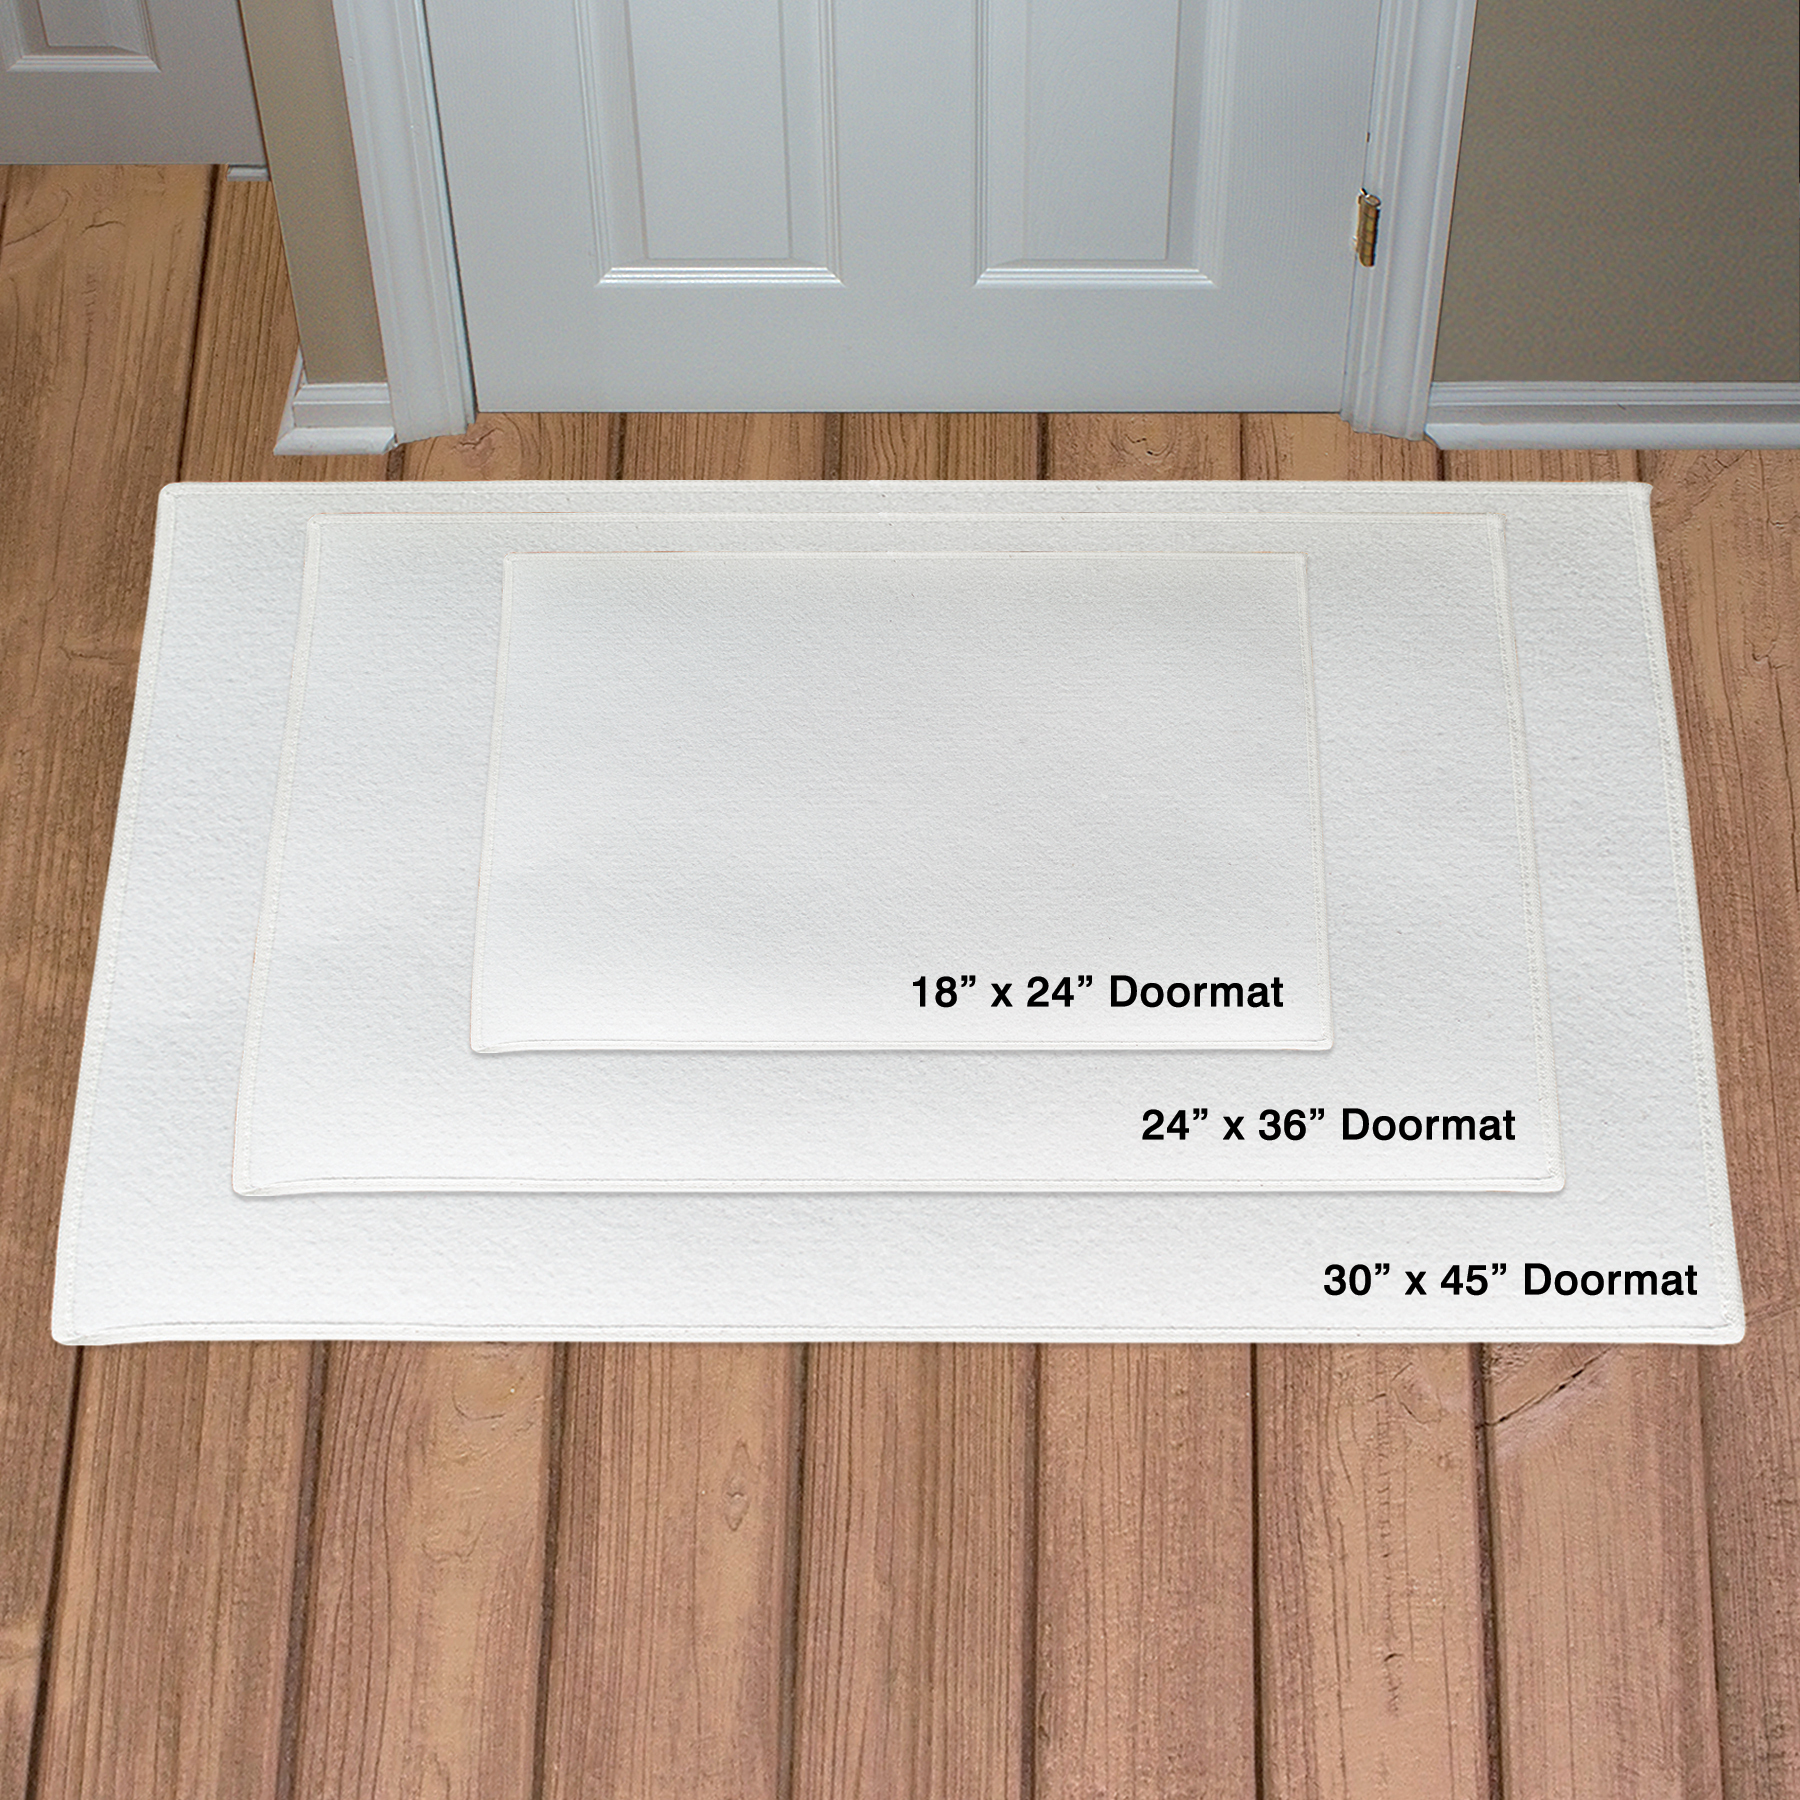 Personalized Family Word-Art Doormat | Personalized Doormat